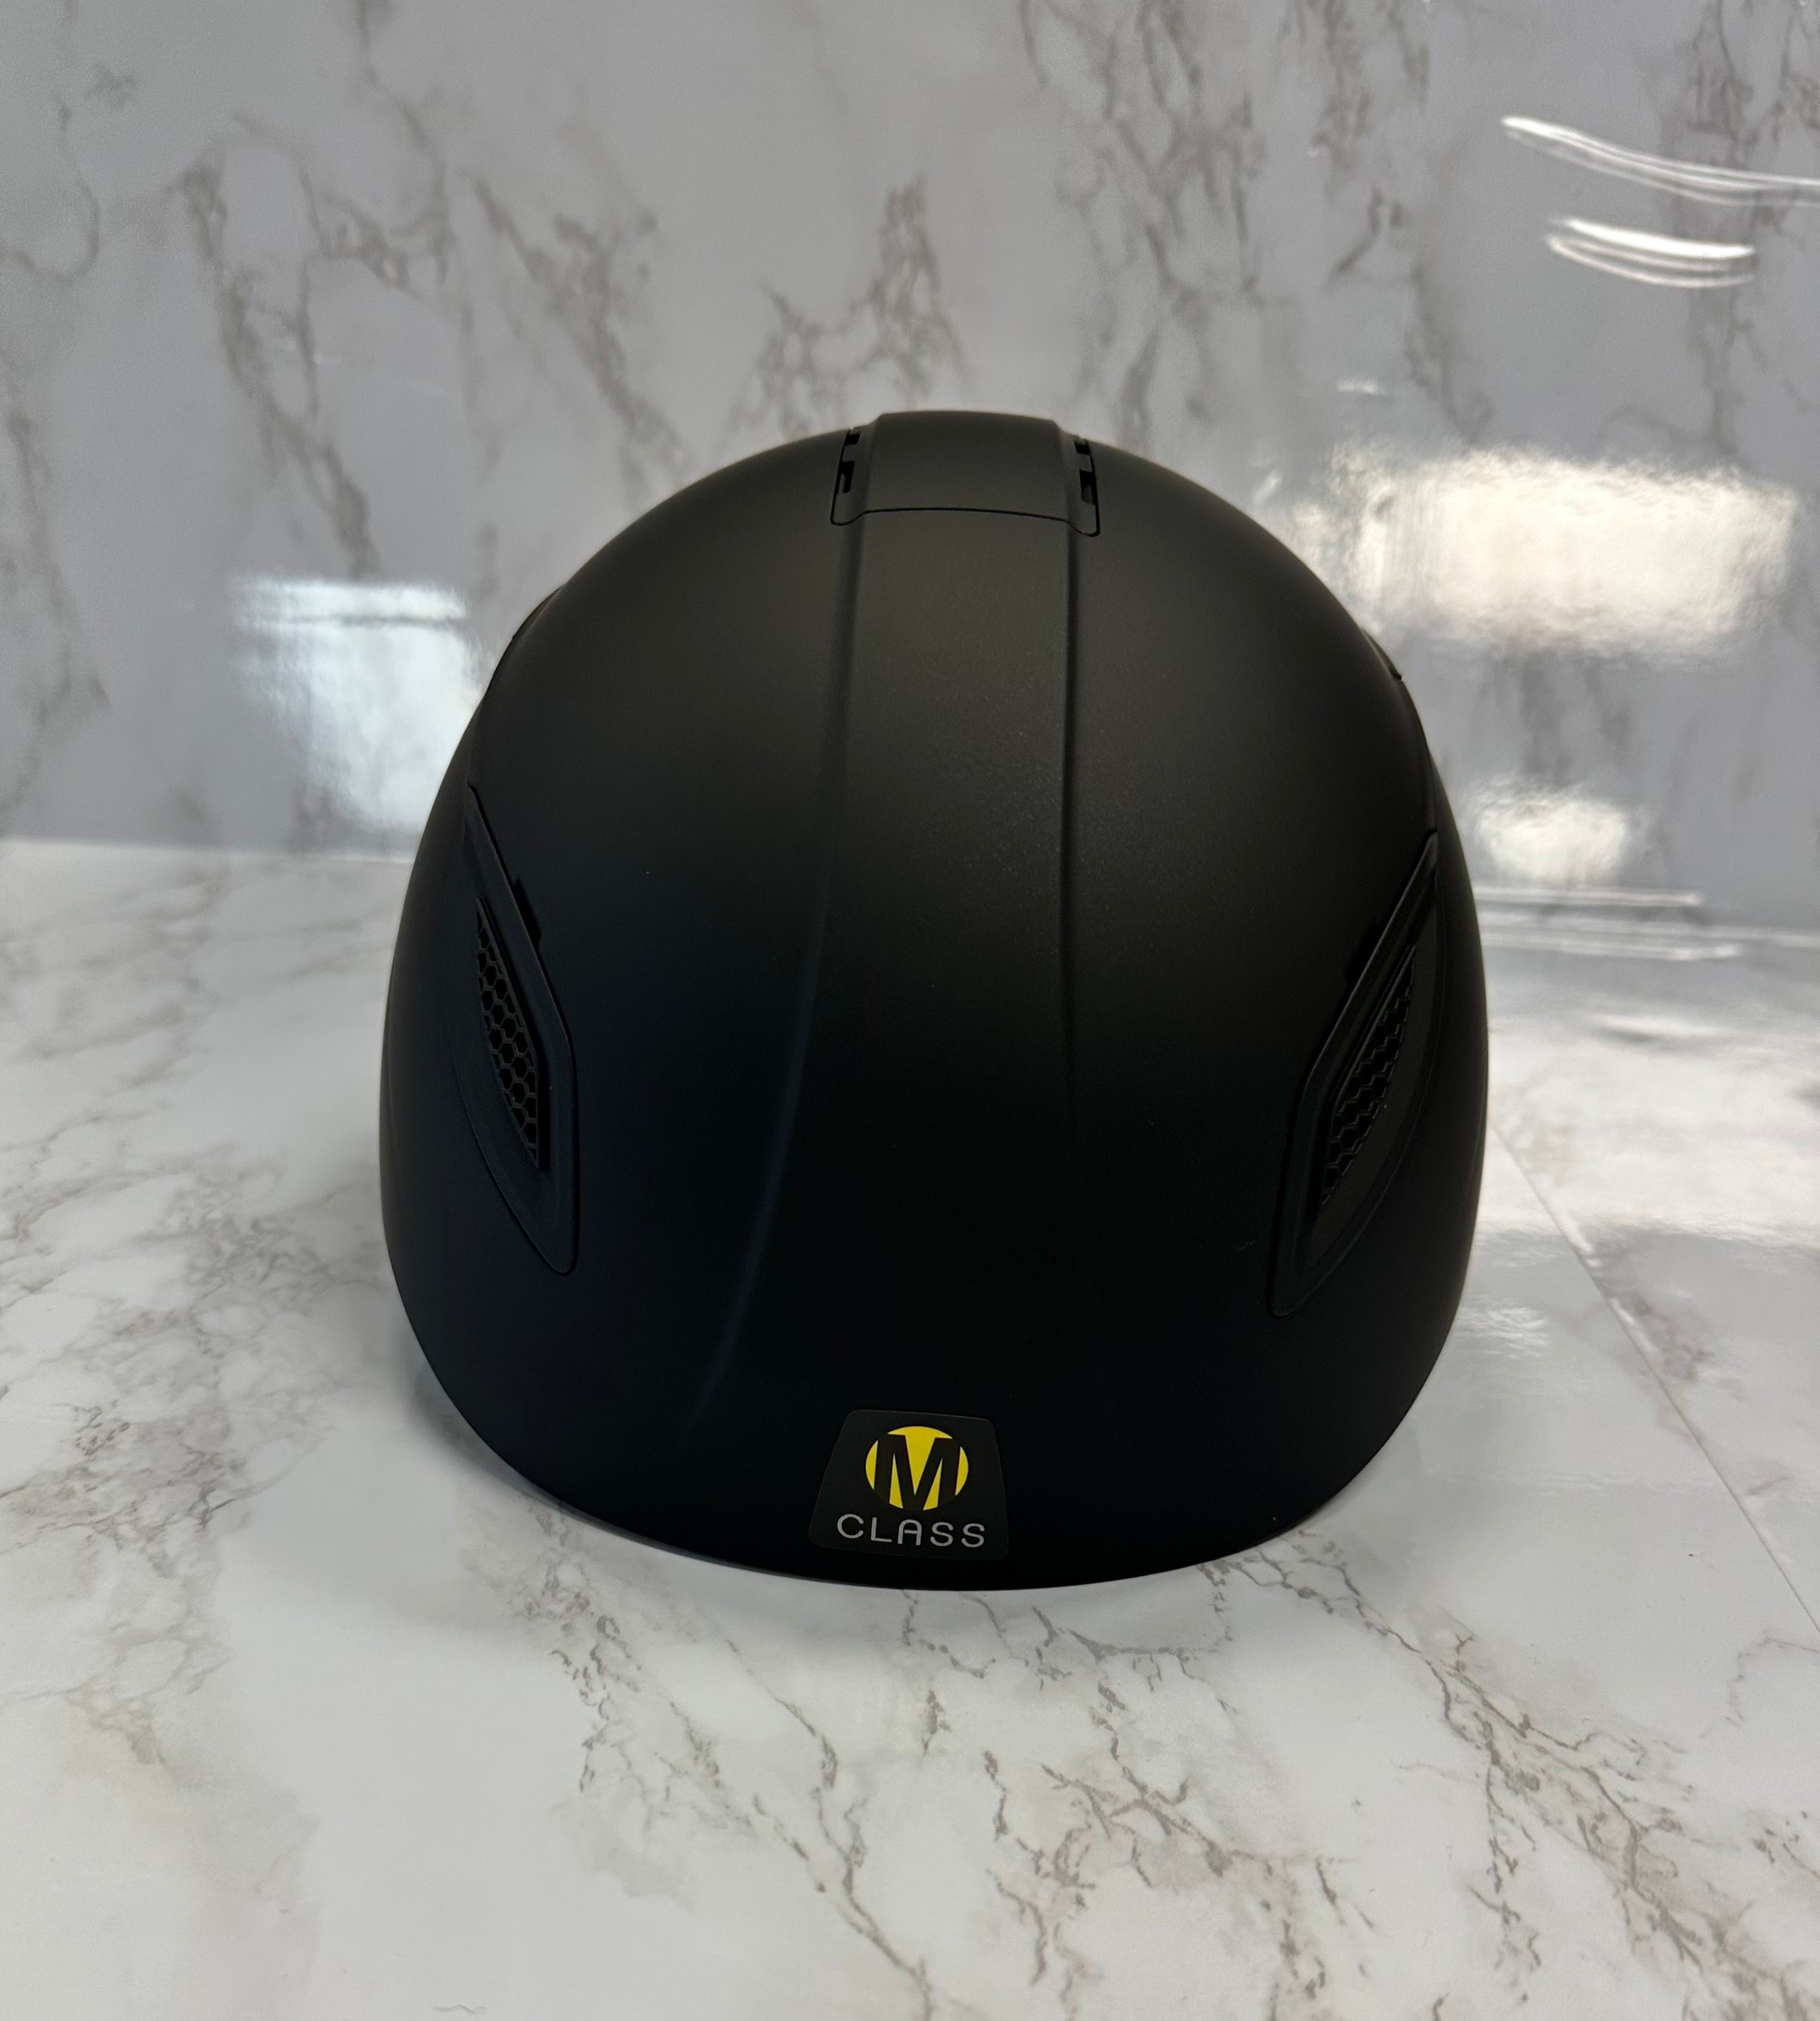 Ovation M Class MIPS Helmet